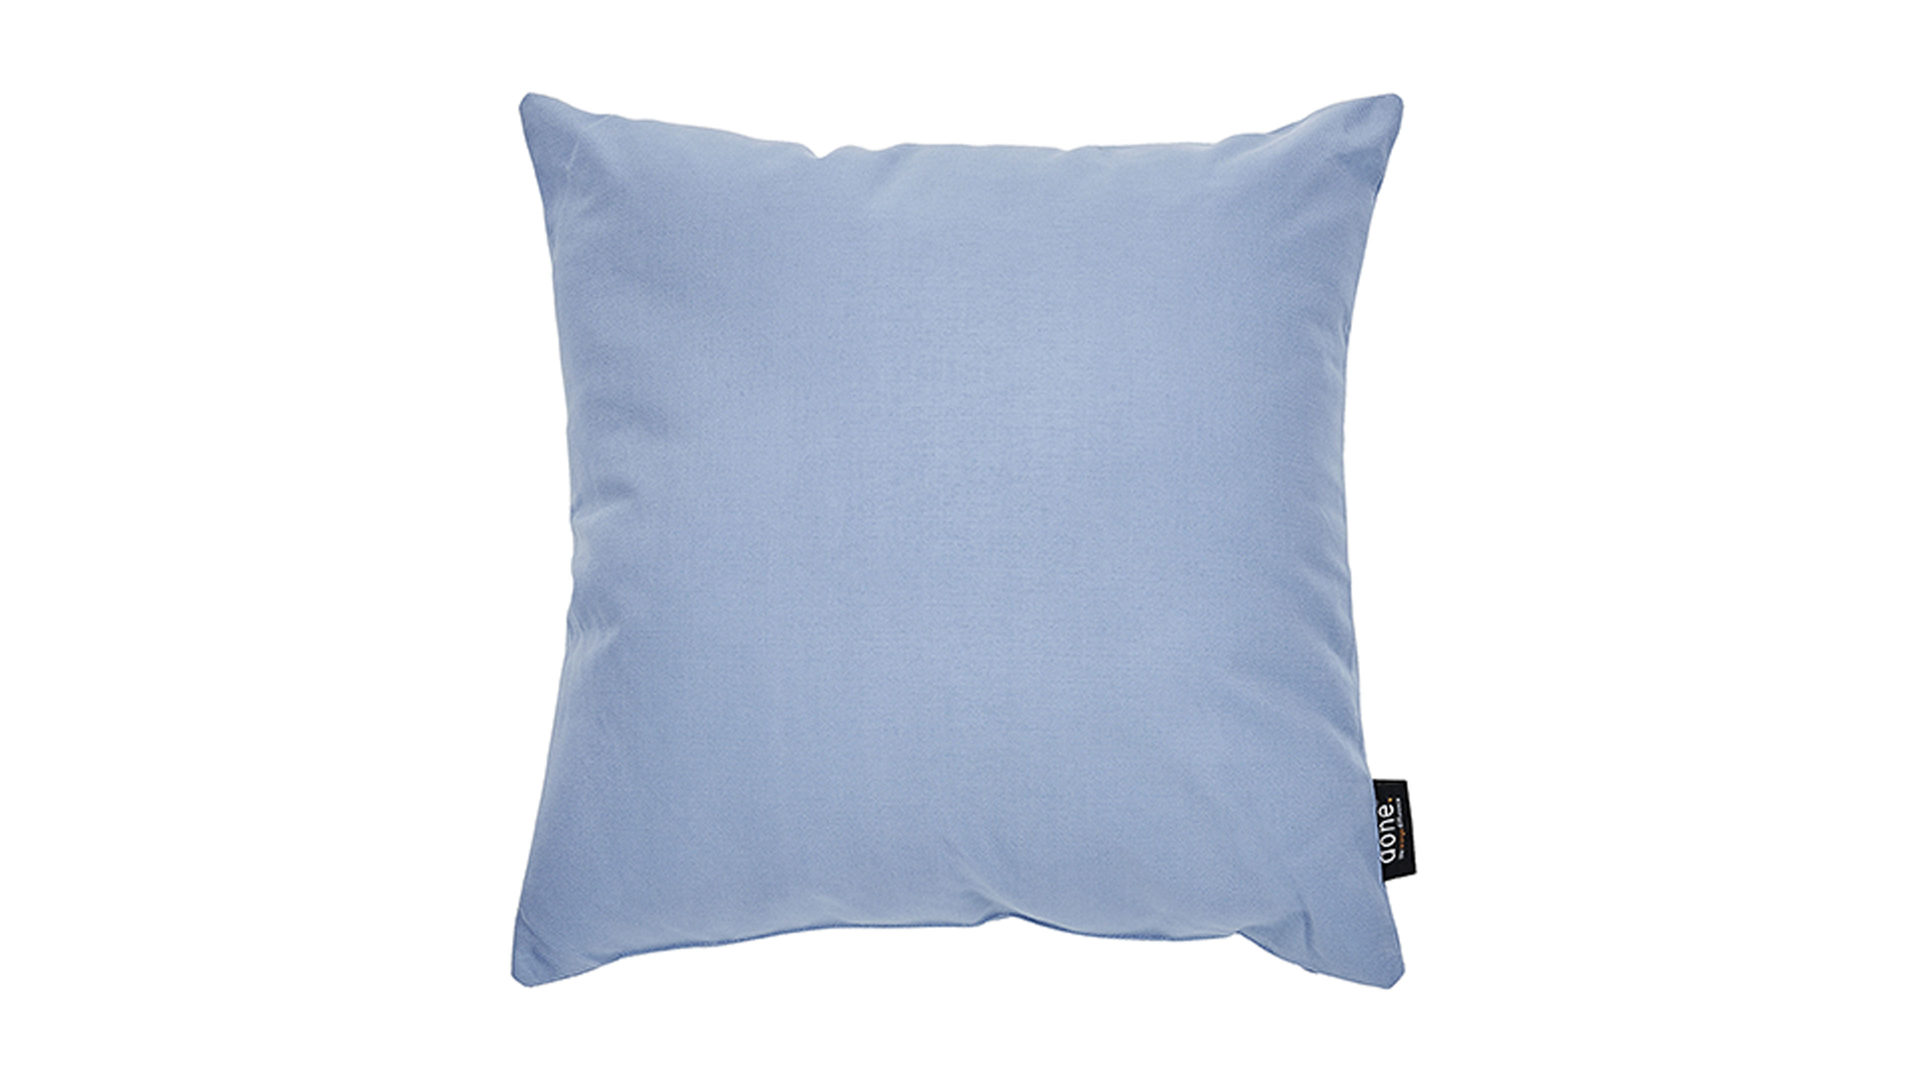 Einzelkissen Done.® aus Kunstfaser in Hellblau done.® Kissen Cushion Outside graublauer Olefinbezug – ca. 45 x 45 cm